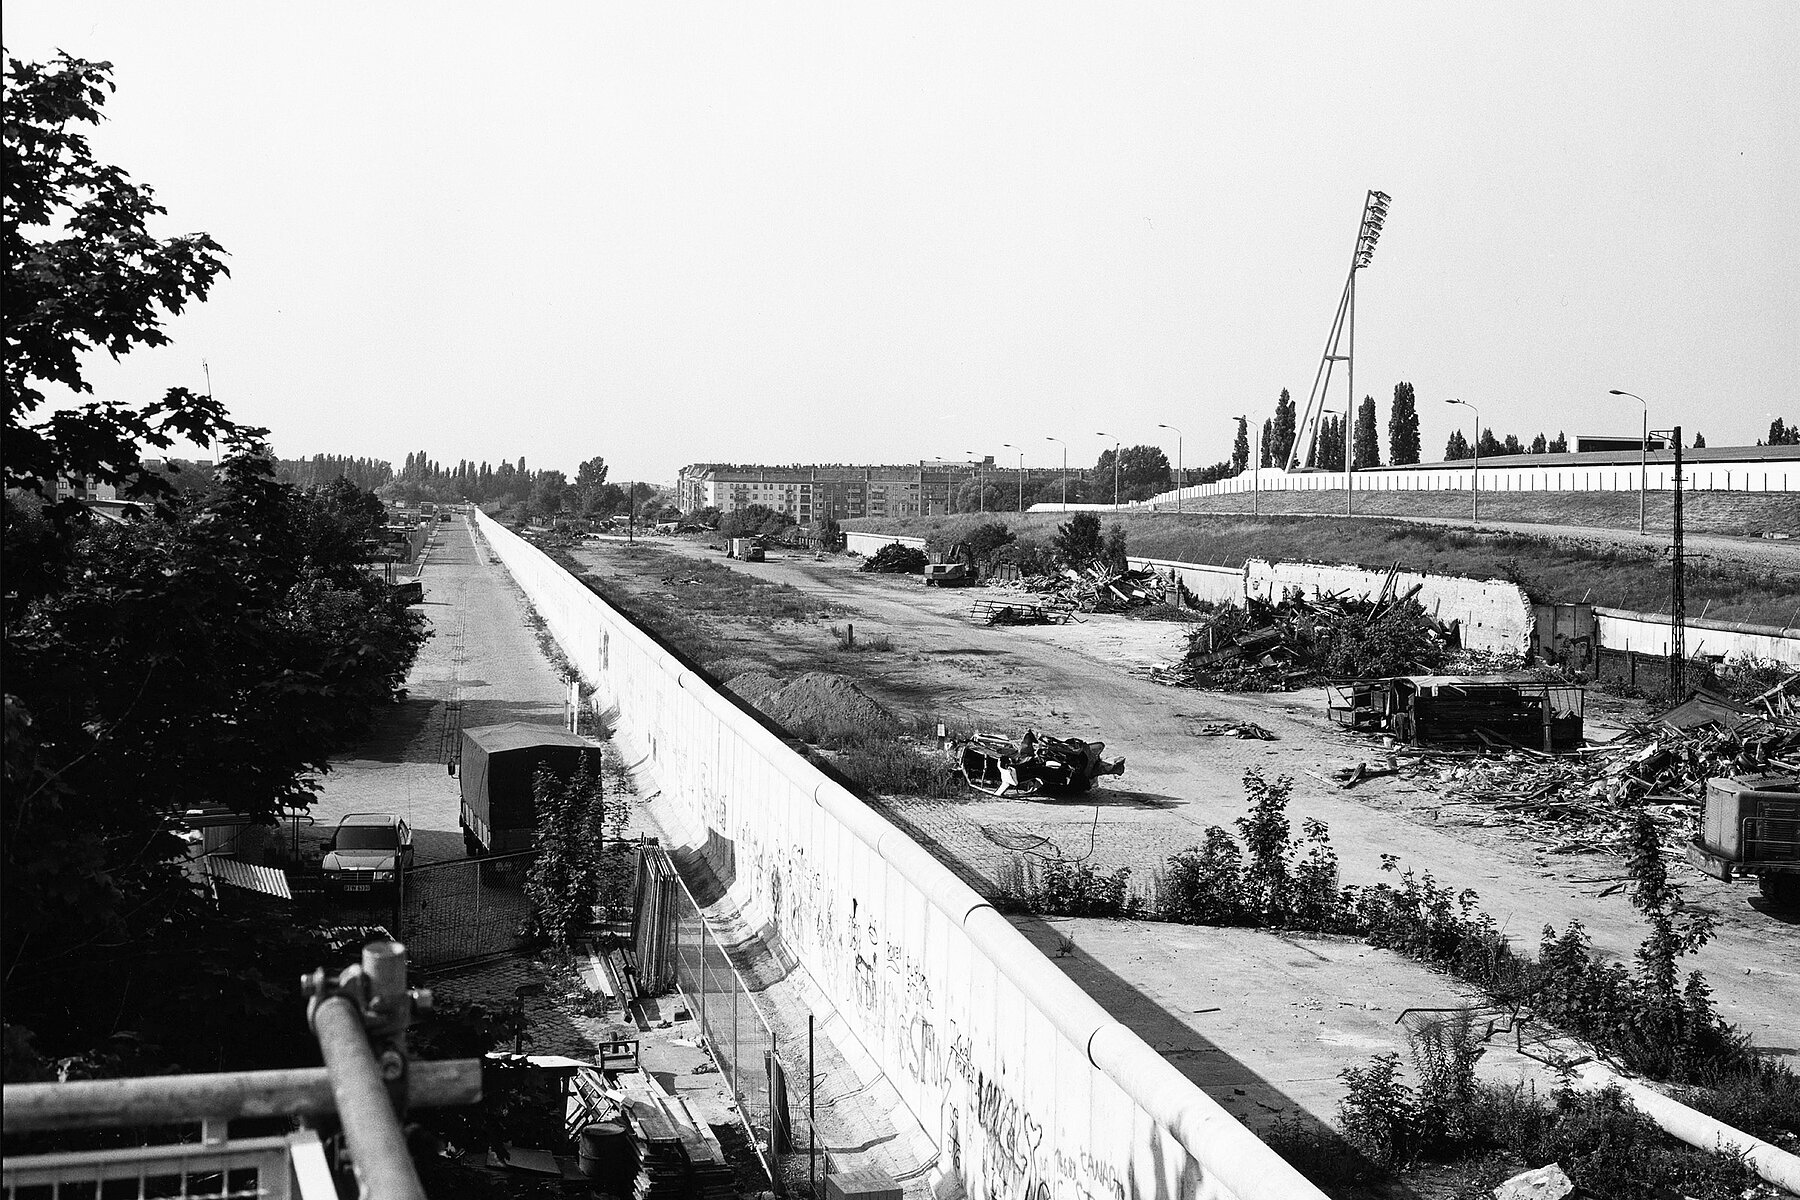 Die Berliner Mauer im späteren Gelände des Mauerparks. Rechts der Mauer befindet sich Schutt, ganz rechts sind die Flutlichter des Jahnsportparks. 